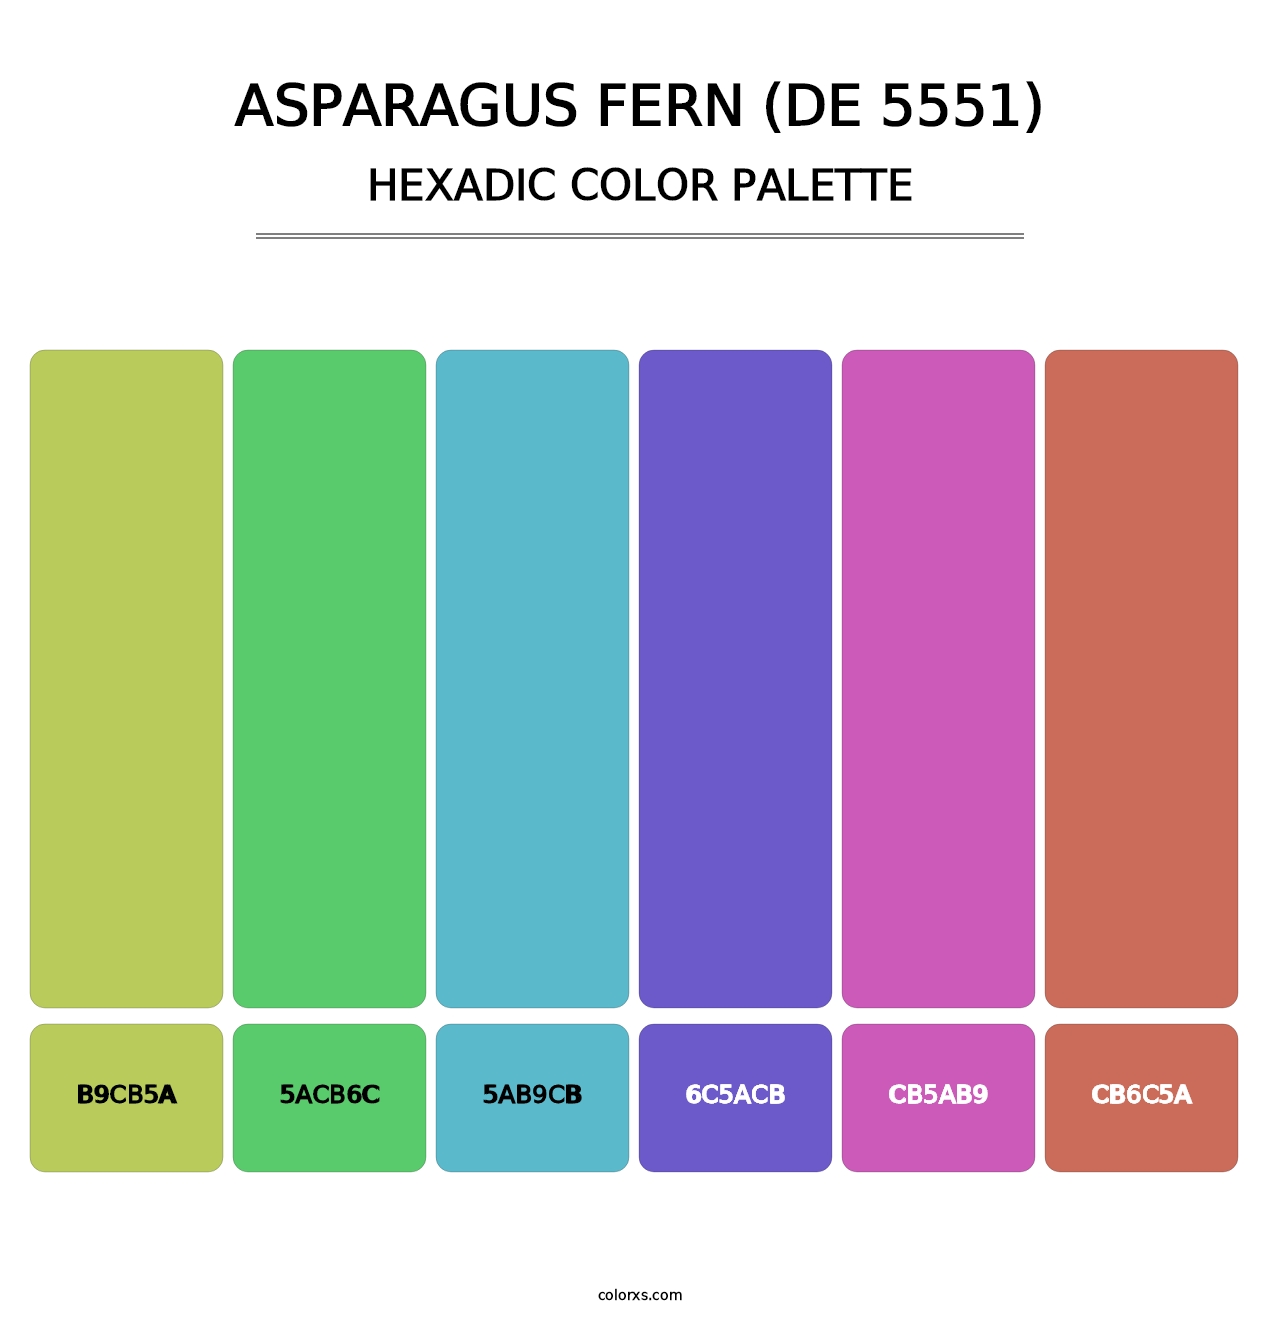 Asparagus Fern (DE 5551) - Hexadic Color Palette